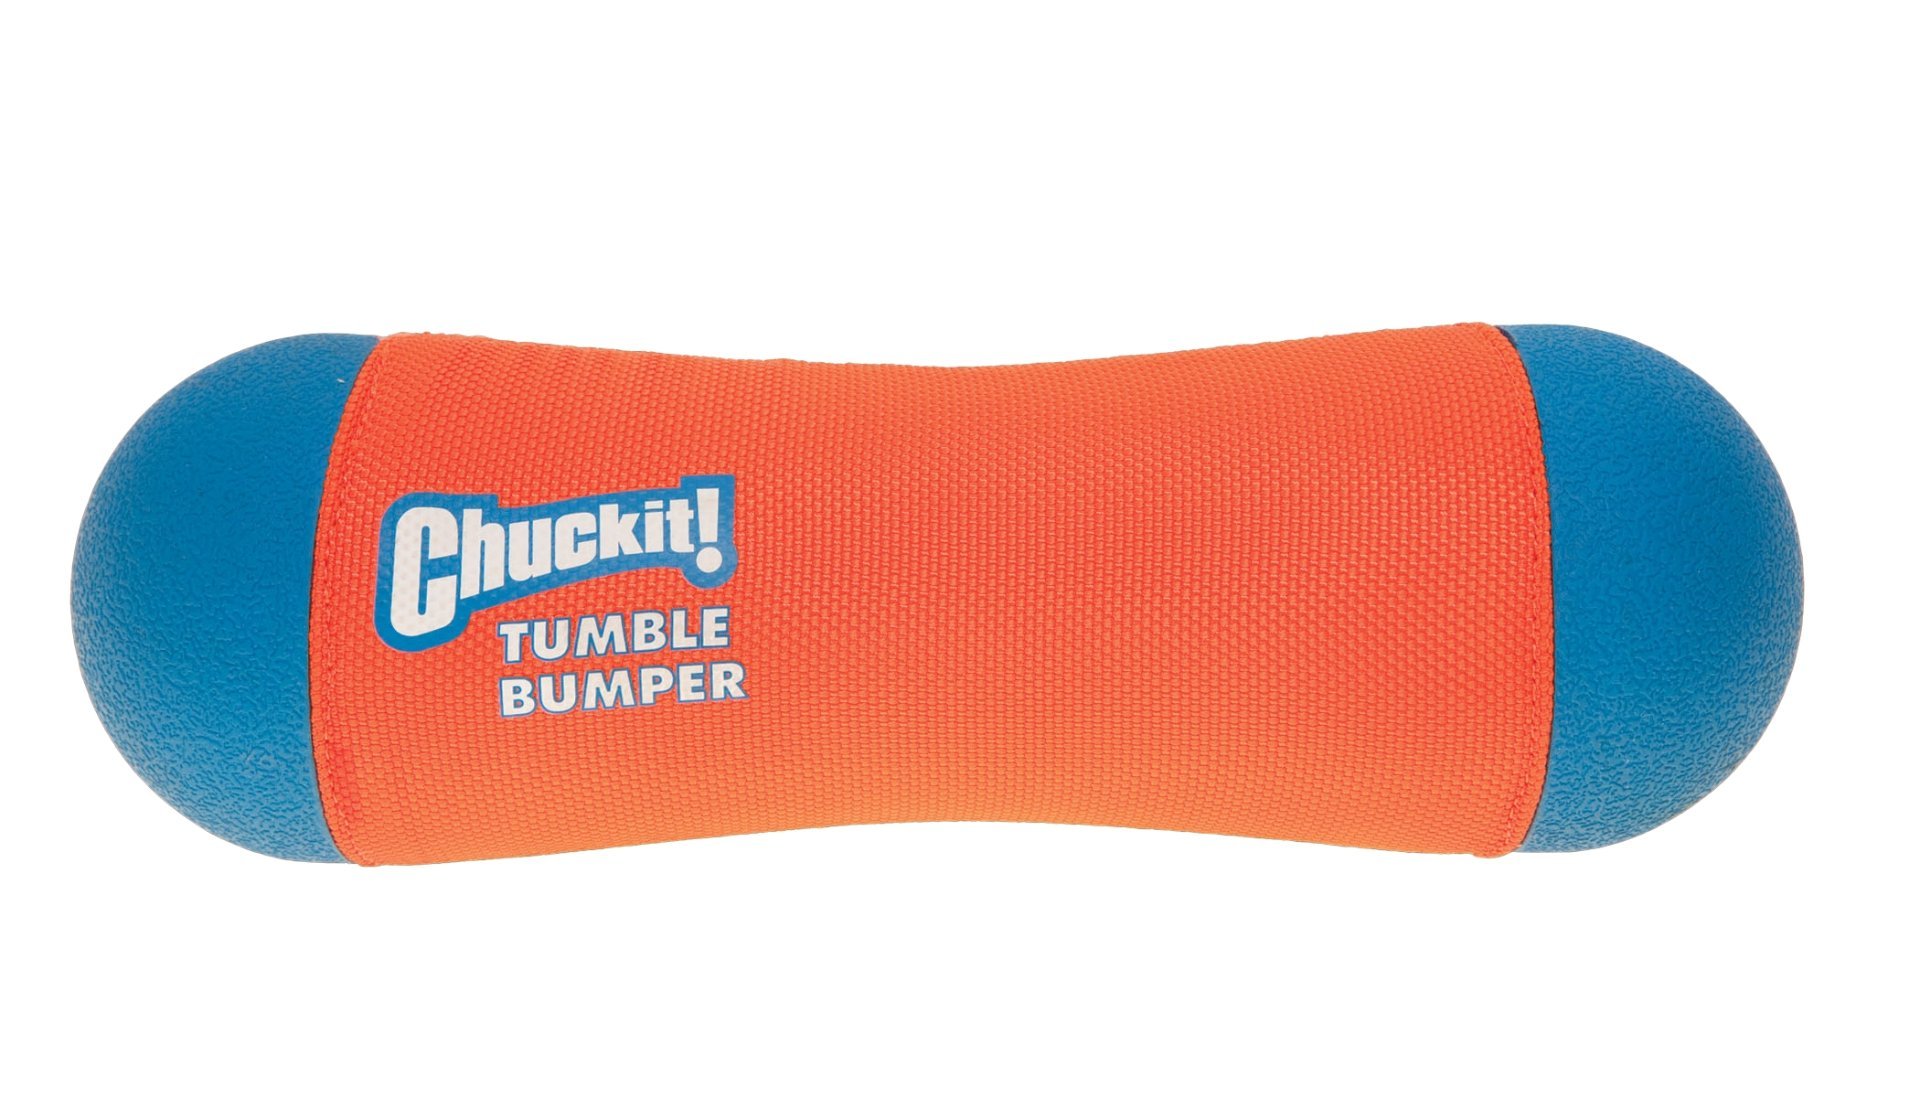 Chuckit-tumble-bumper